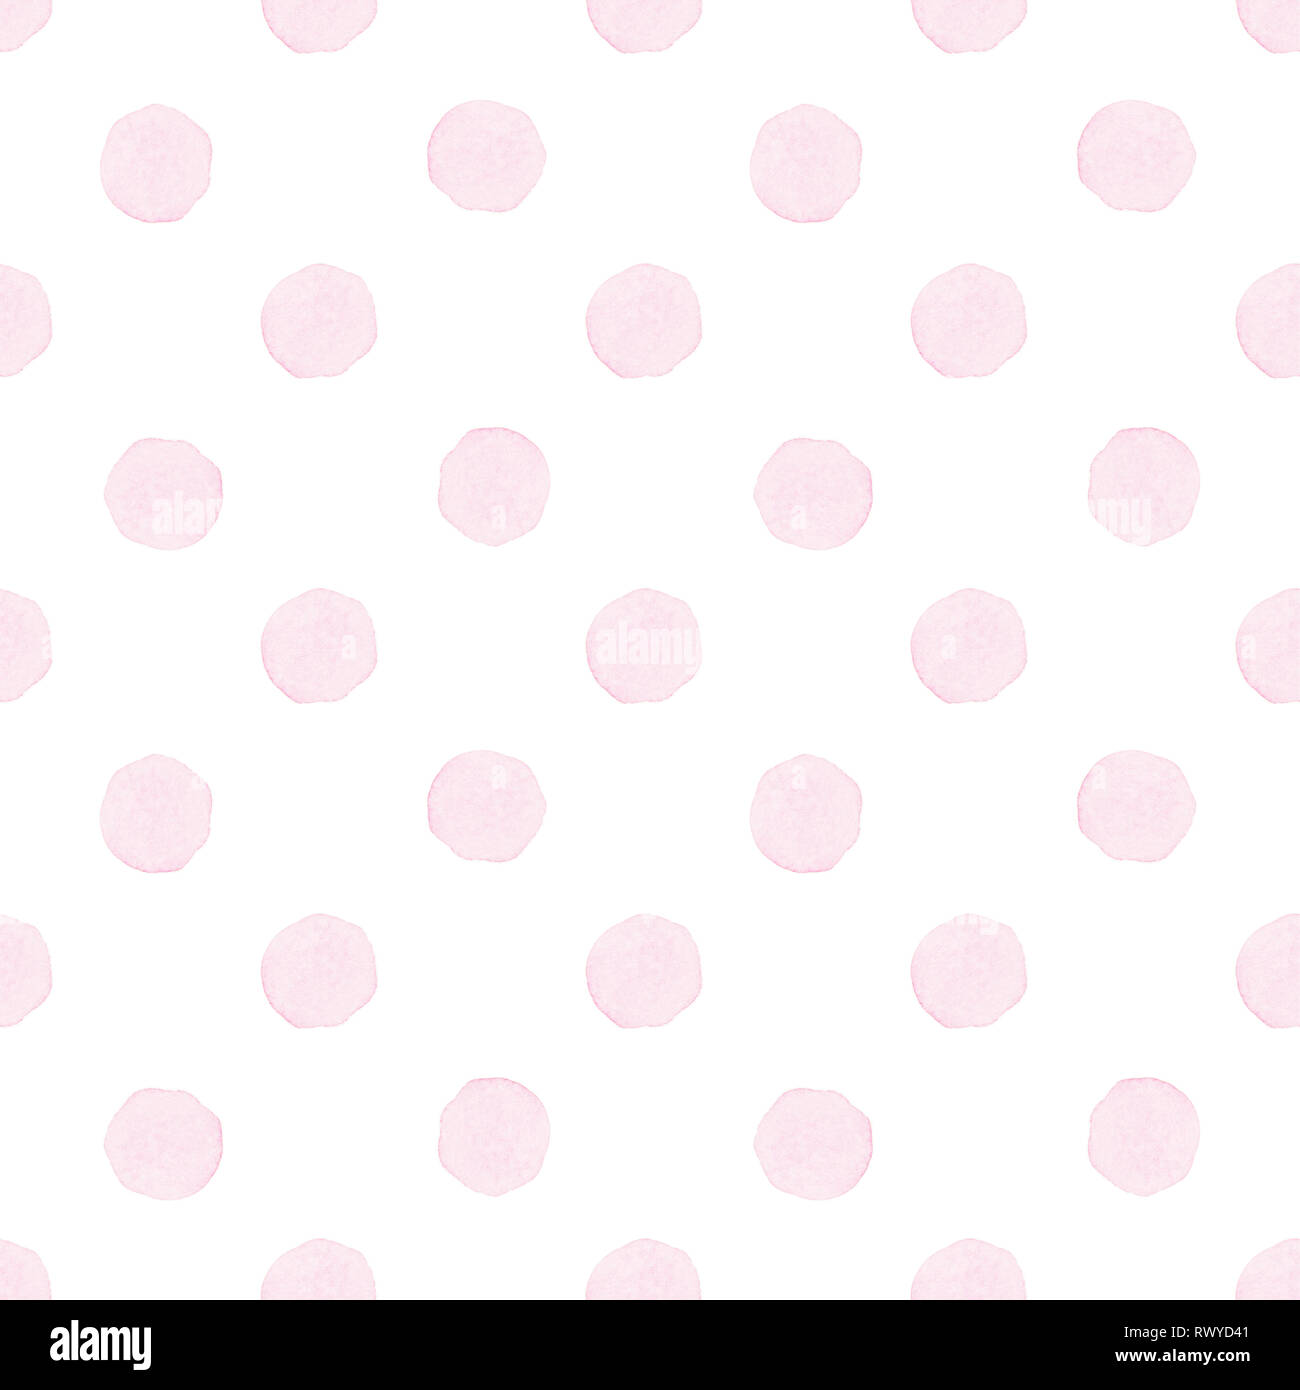 Aquarell Kreise in Pastellfarben. Nahtlose Muster. Aquarell rosa Flecken auf weißem Hintergrund. Stockfoto